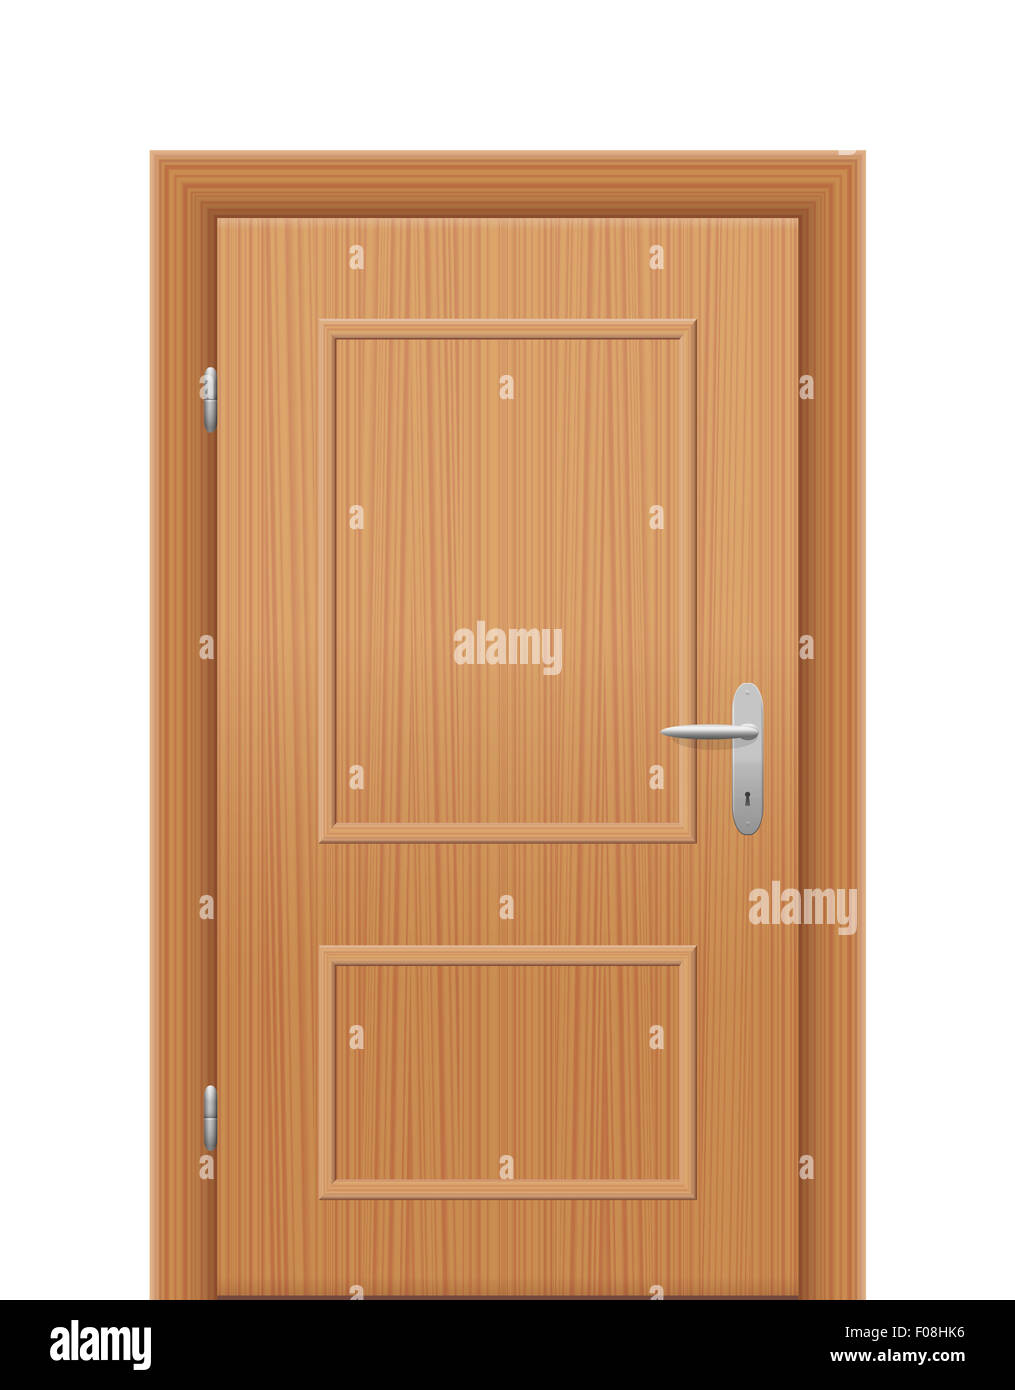 Hölzerne Tür geschlossen. Abbildung auf weißem Hintergrund. Stockfoto